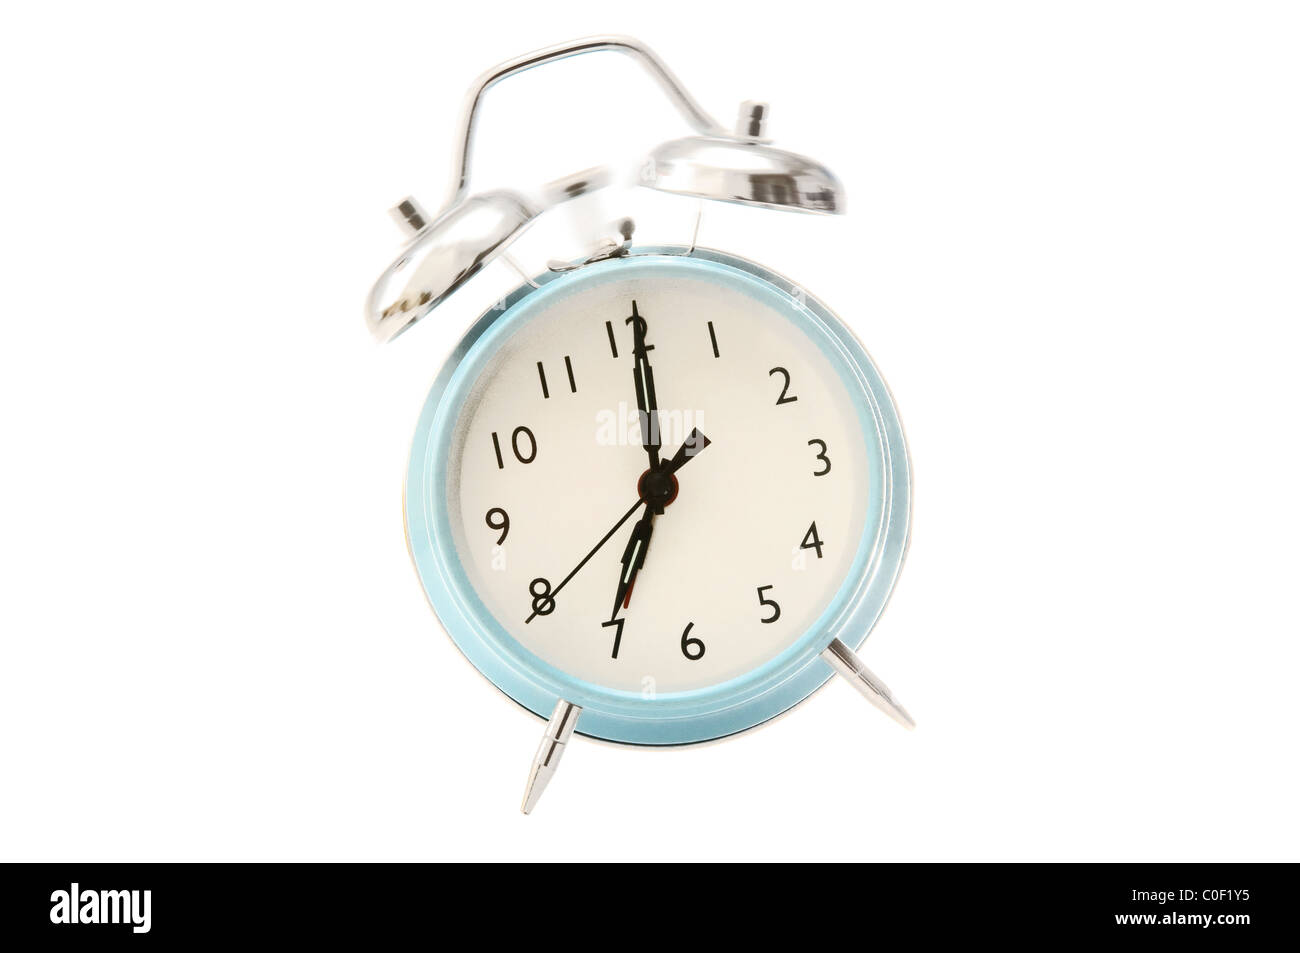 Alarm clock ringing Stock Photo